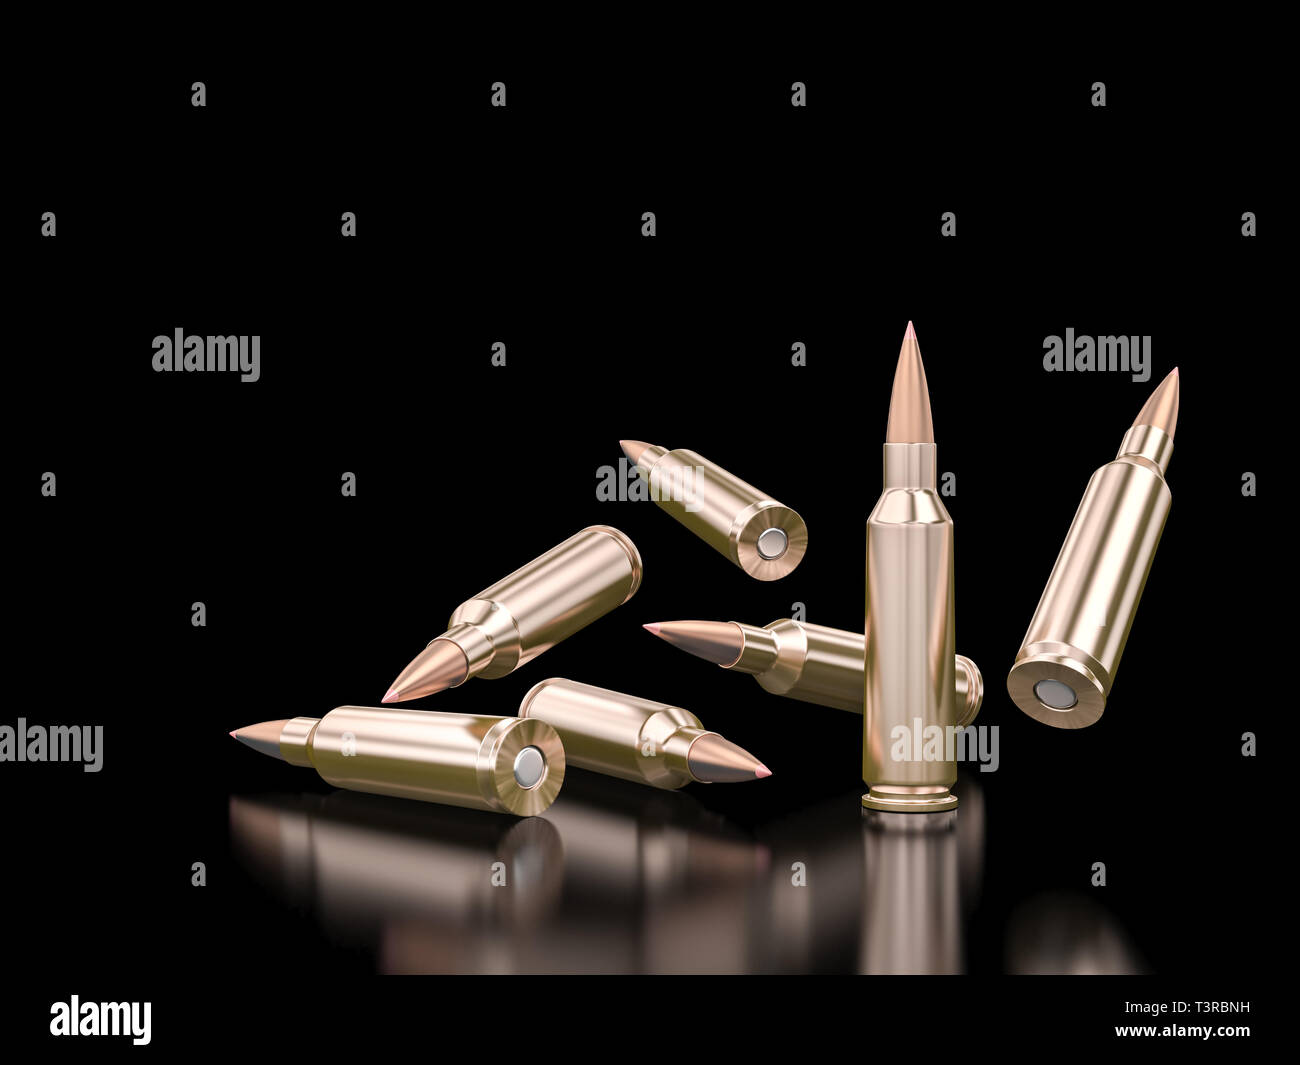 Immagine 3D rappresentata da una serie di fucile da assalto elenchi puntati su uno sfondo nero. Foto Stock